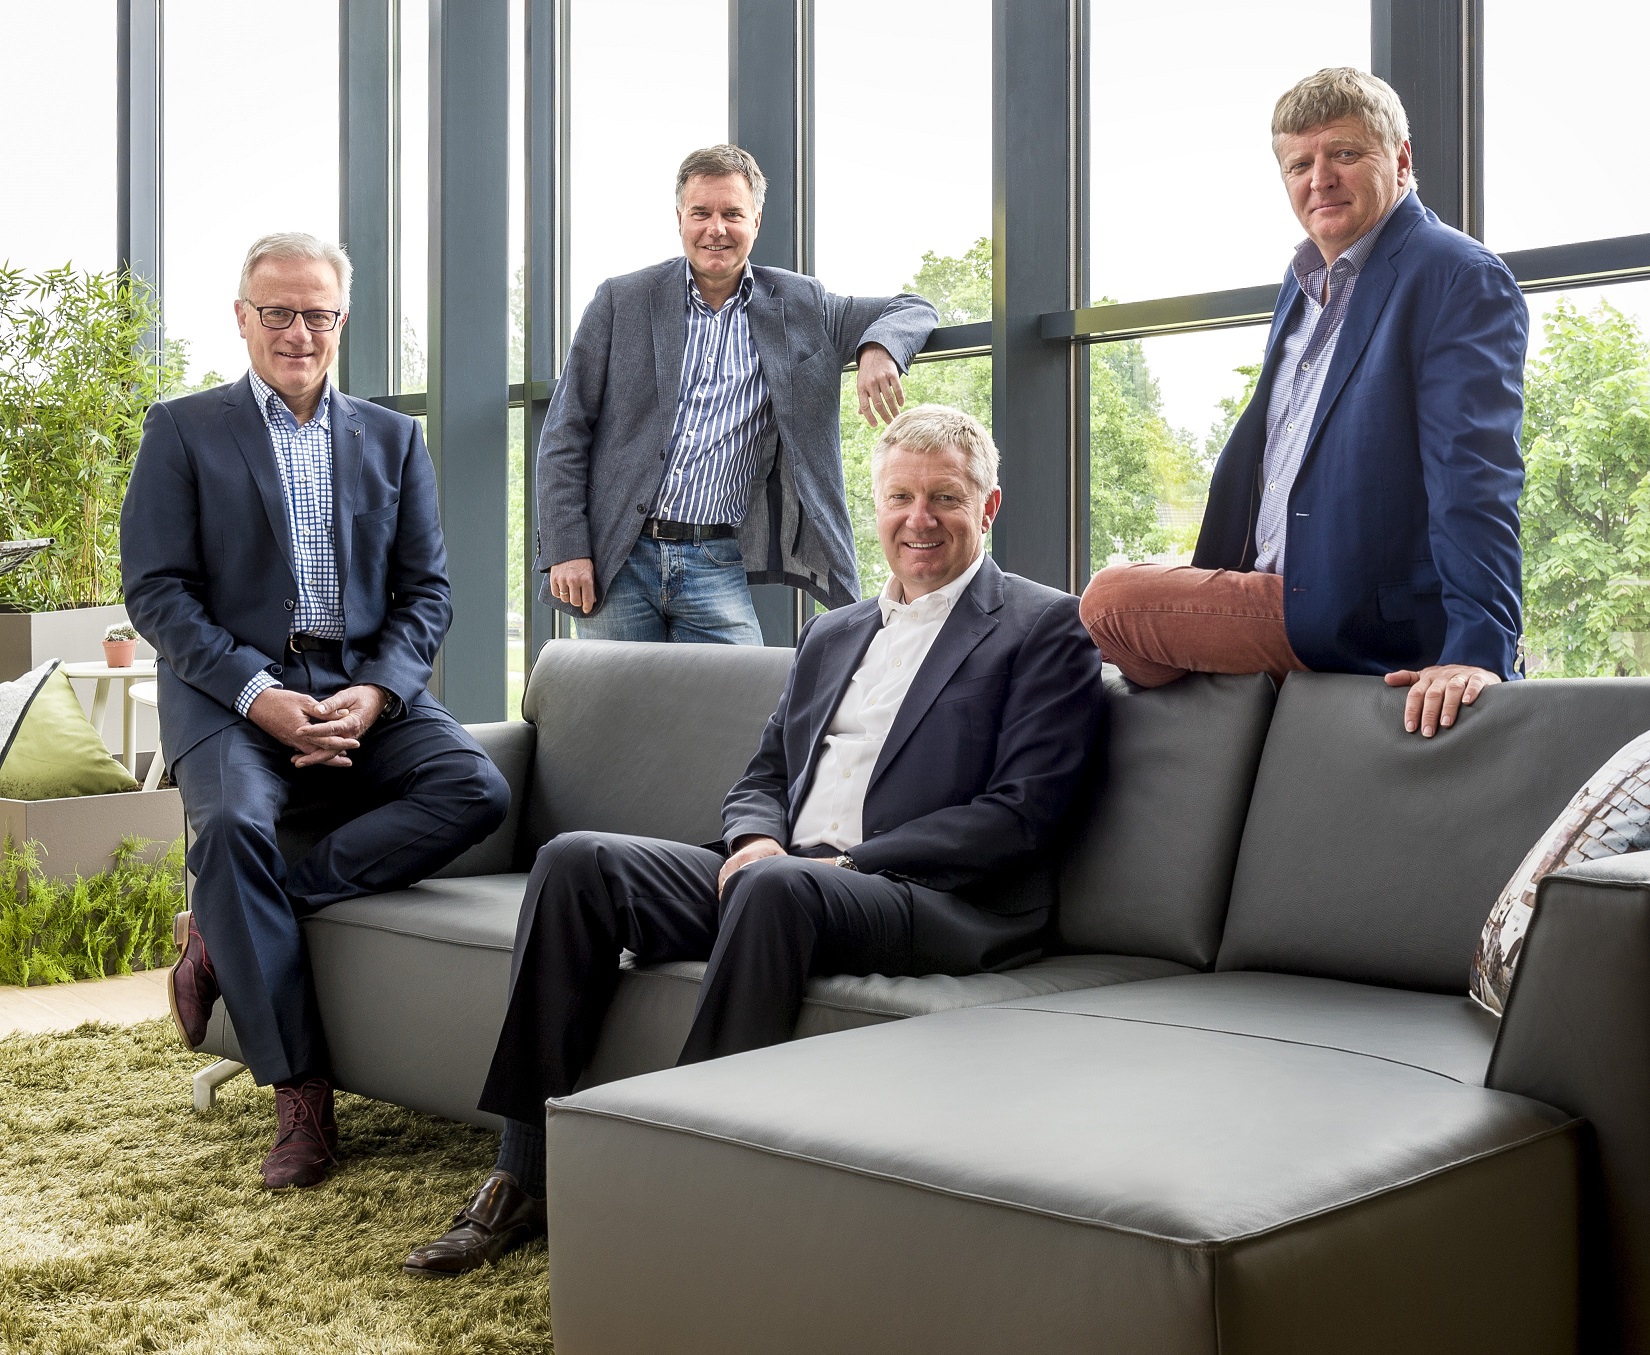 From left to right: Frans Herman, Bernd Niessen,  Paul van den Bosch & Danny van den Bosch.